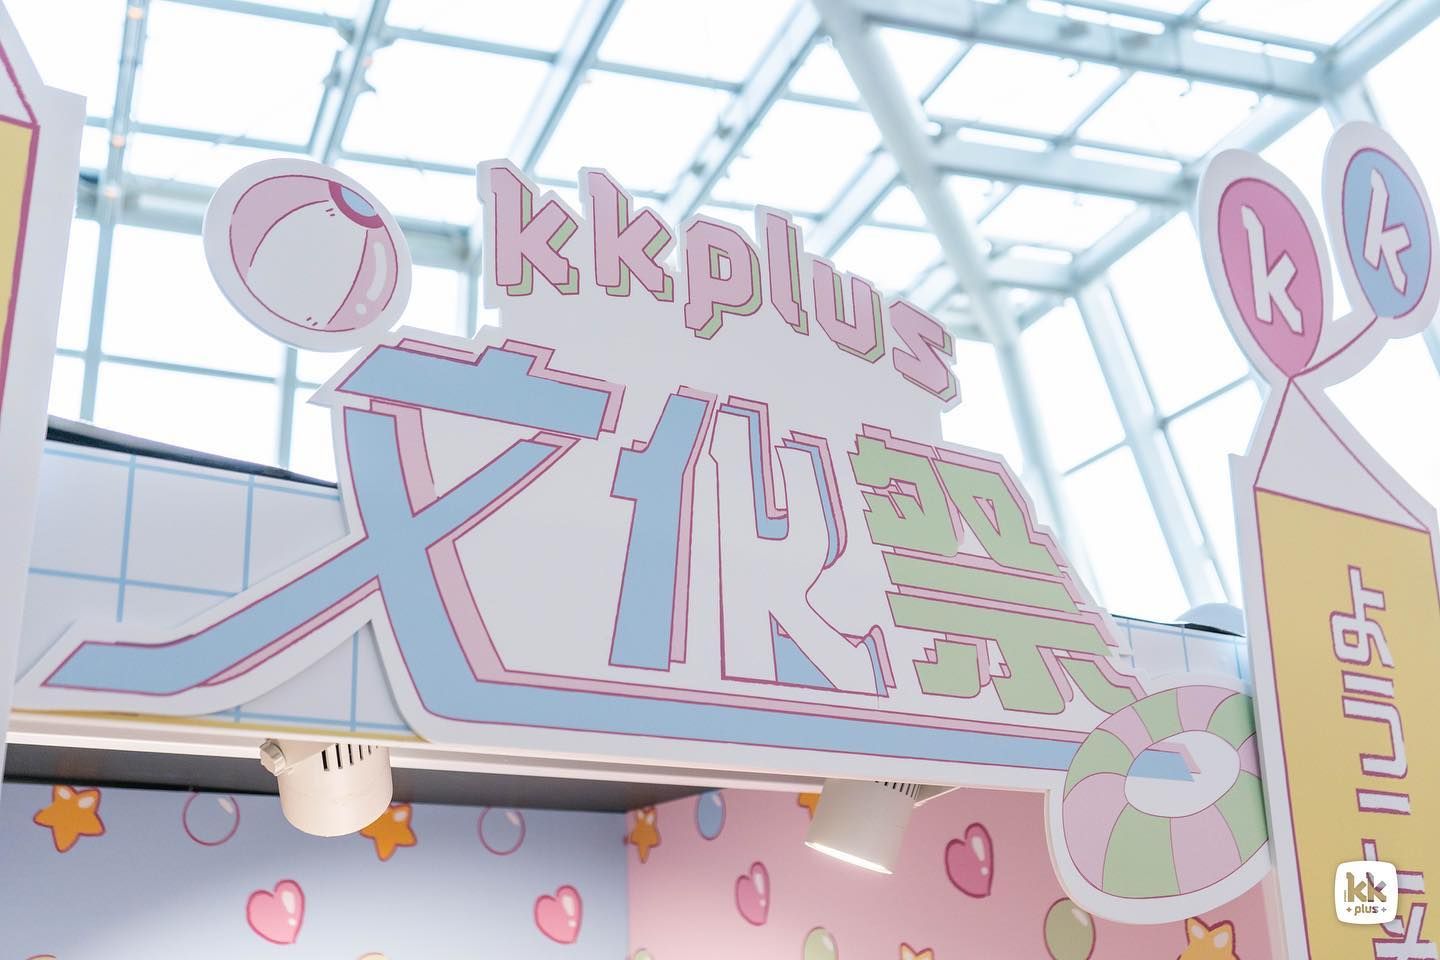 Kkplus夏日文化祭 Timable Hong Kong Event